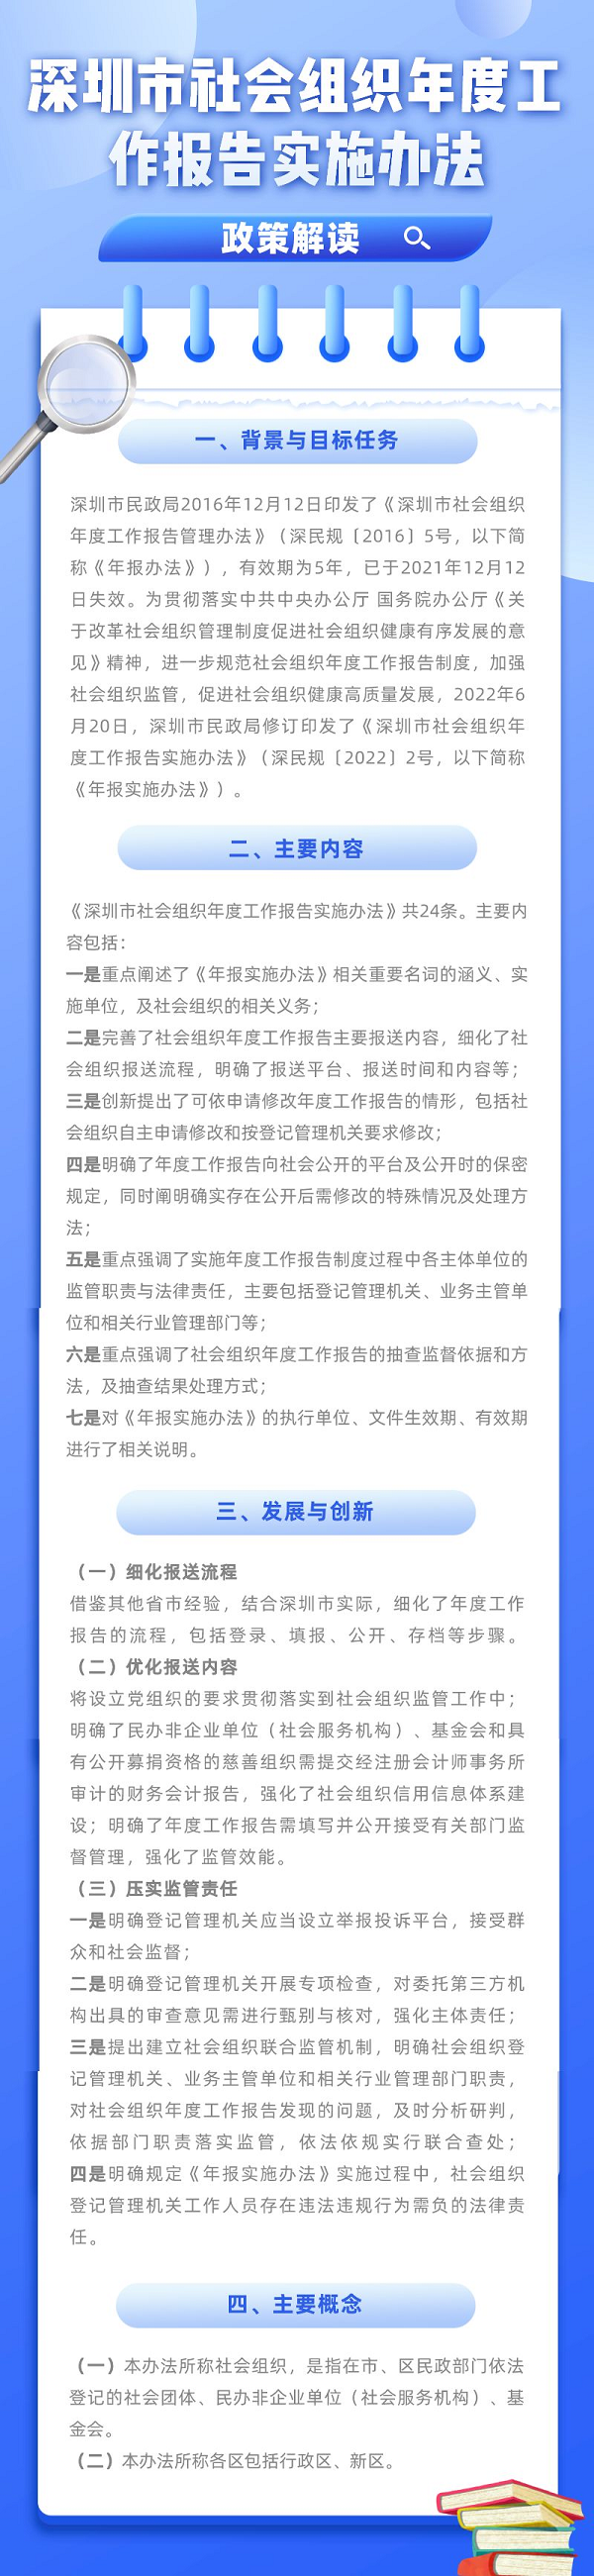 深圳市社会组织年度工作报告实施办法政策图解.png